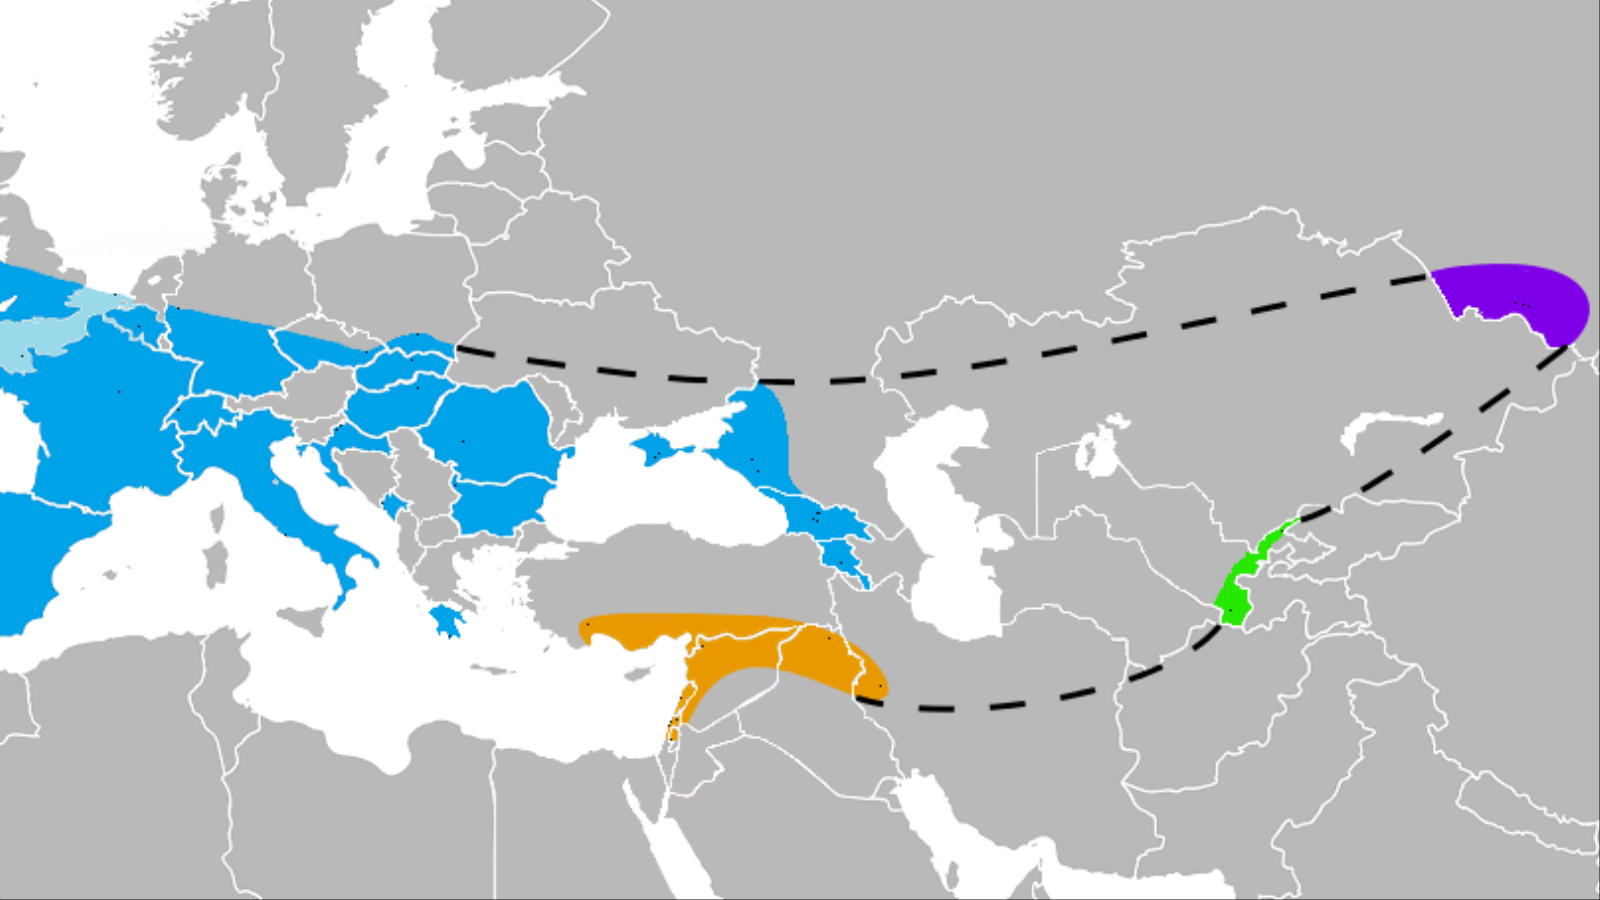 ‪انتشر النياندرتال في شريط جغرافي طويل يمتد من جنوب أوروبا حتى وسط آسيا (ويكيبيديا)‬ انتشر النياندرتال في شريط جغرافي طويل يمتد من جنوب أوروبا حتى وسط آسيا (ويكيبيديا) 